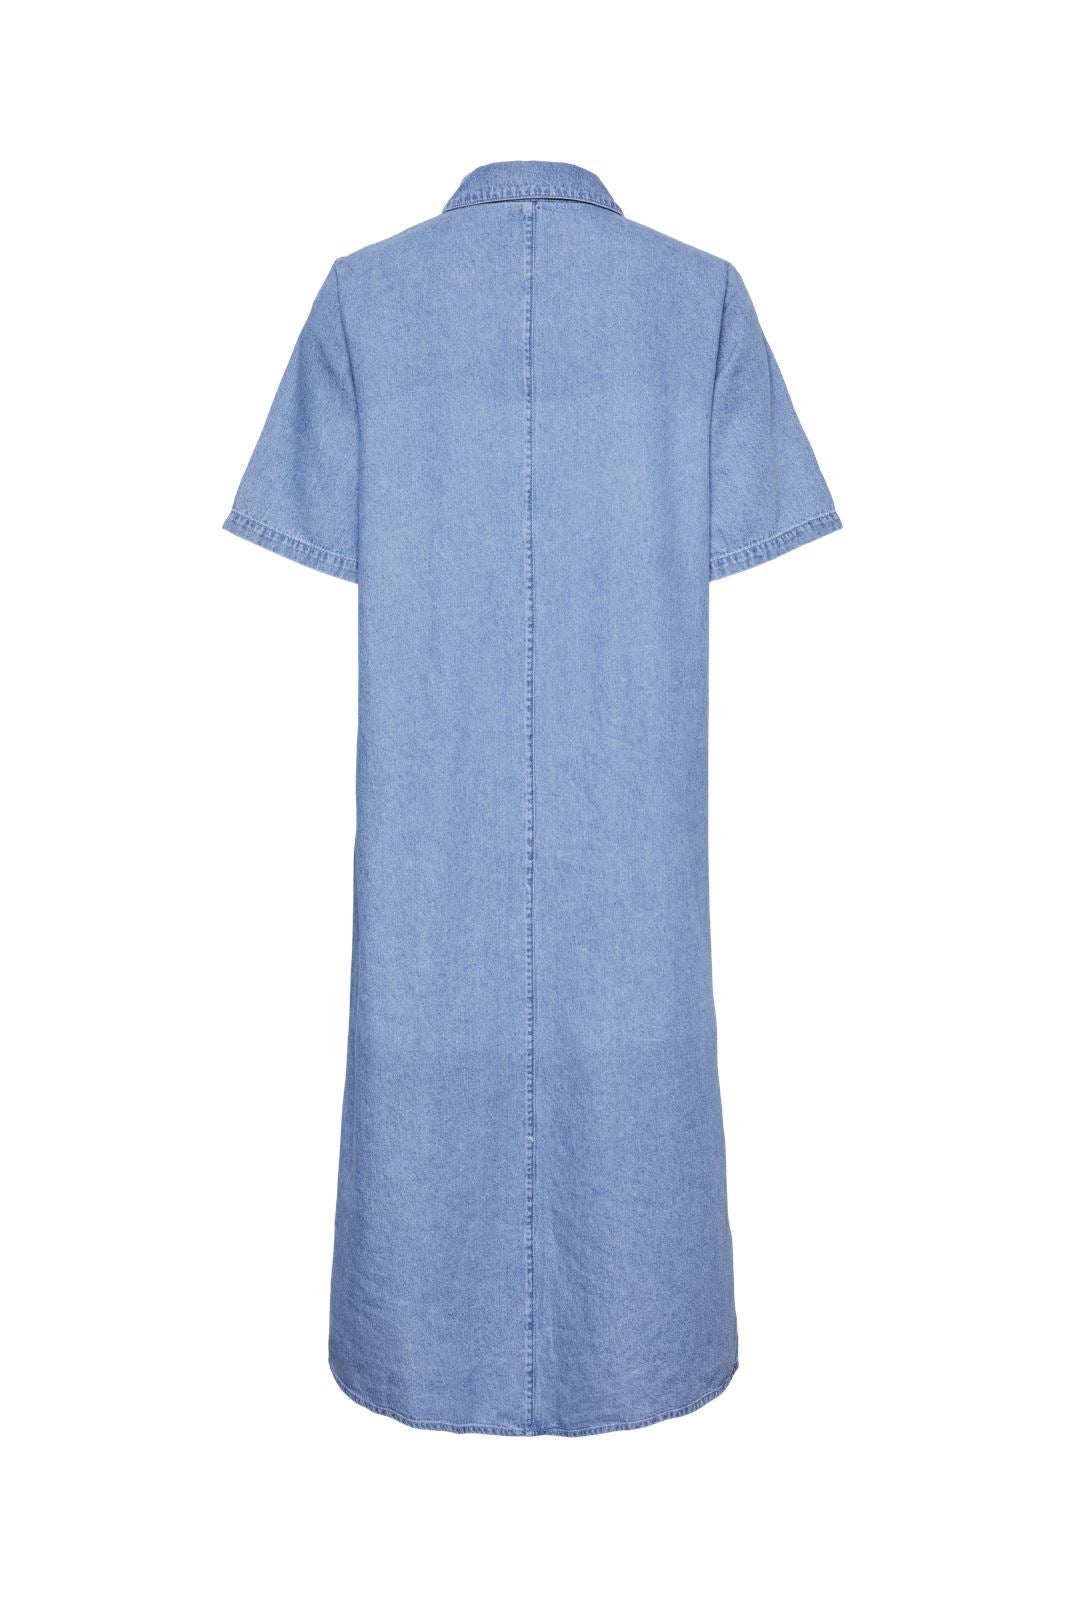 Pieces - Pcannie Ss Denim Dress - 4576691 Medium Blue Denim